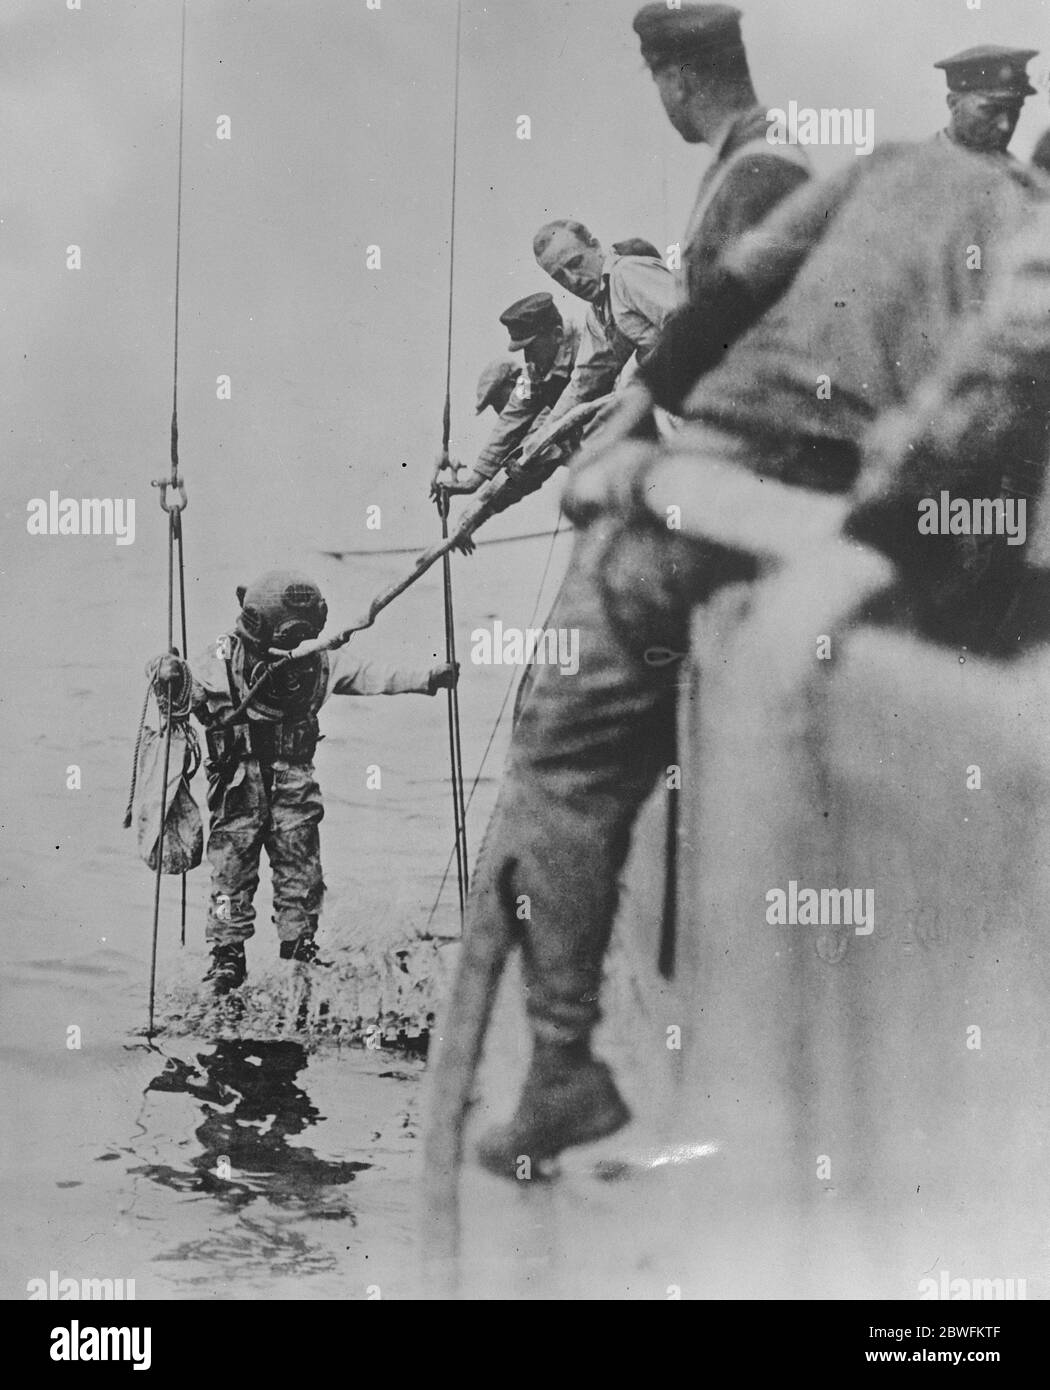 Plongée sous-marine sur sous-marin submergé cette photo officielle de la Marine américaine montre un plongeur descendant vers le sous-marin S51 , qui a été coulé par la ville de Rome au large de Block Island . 14 novembre 1925 Banque D'Images